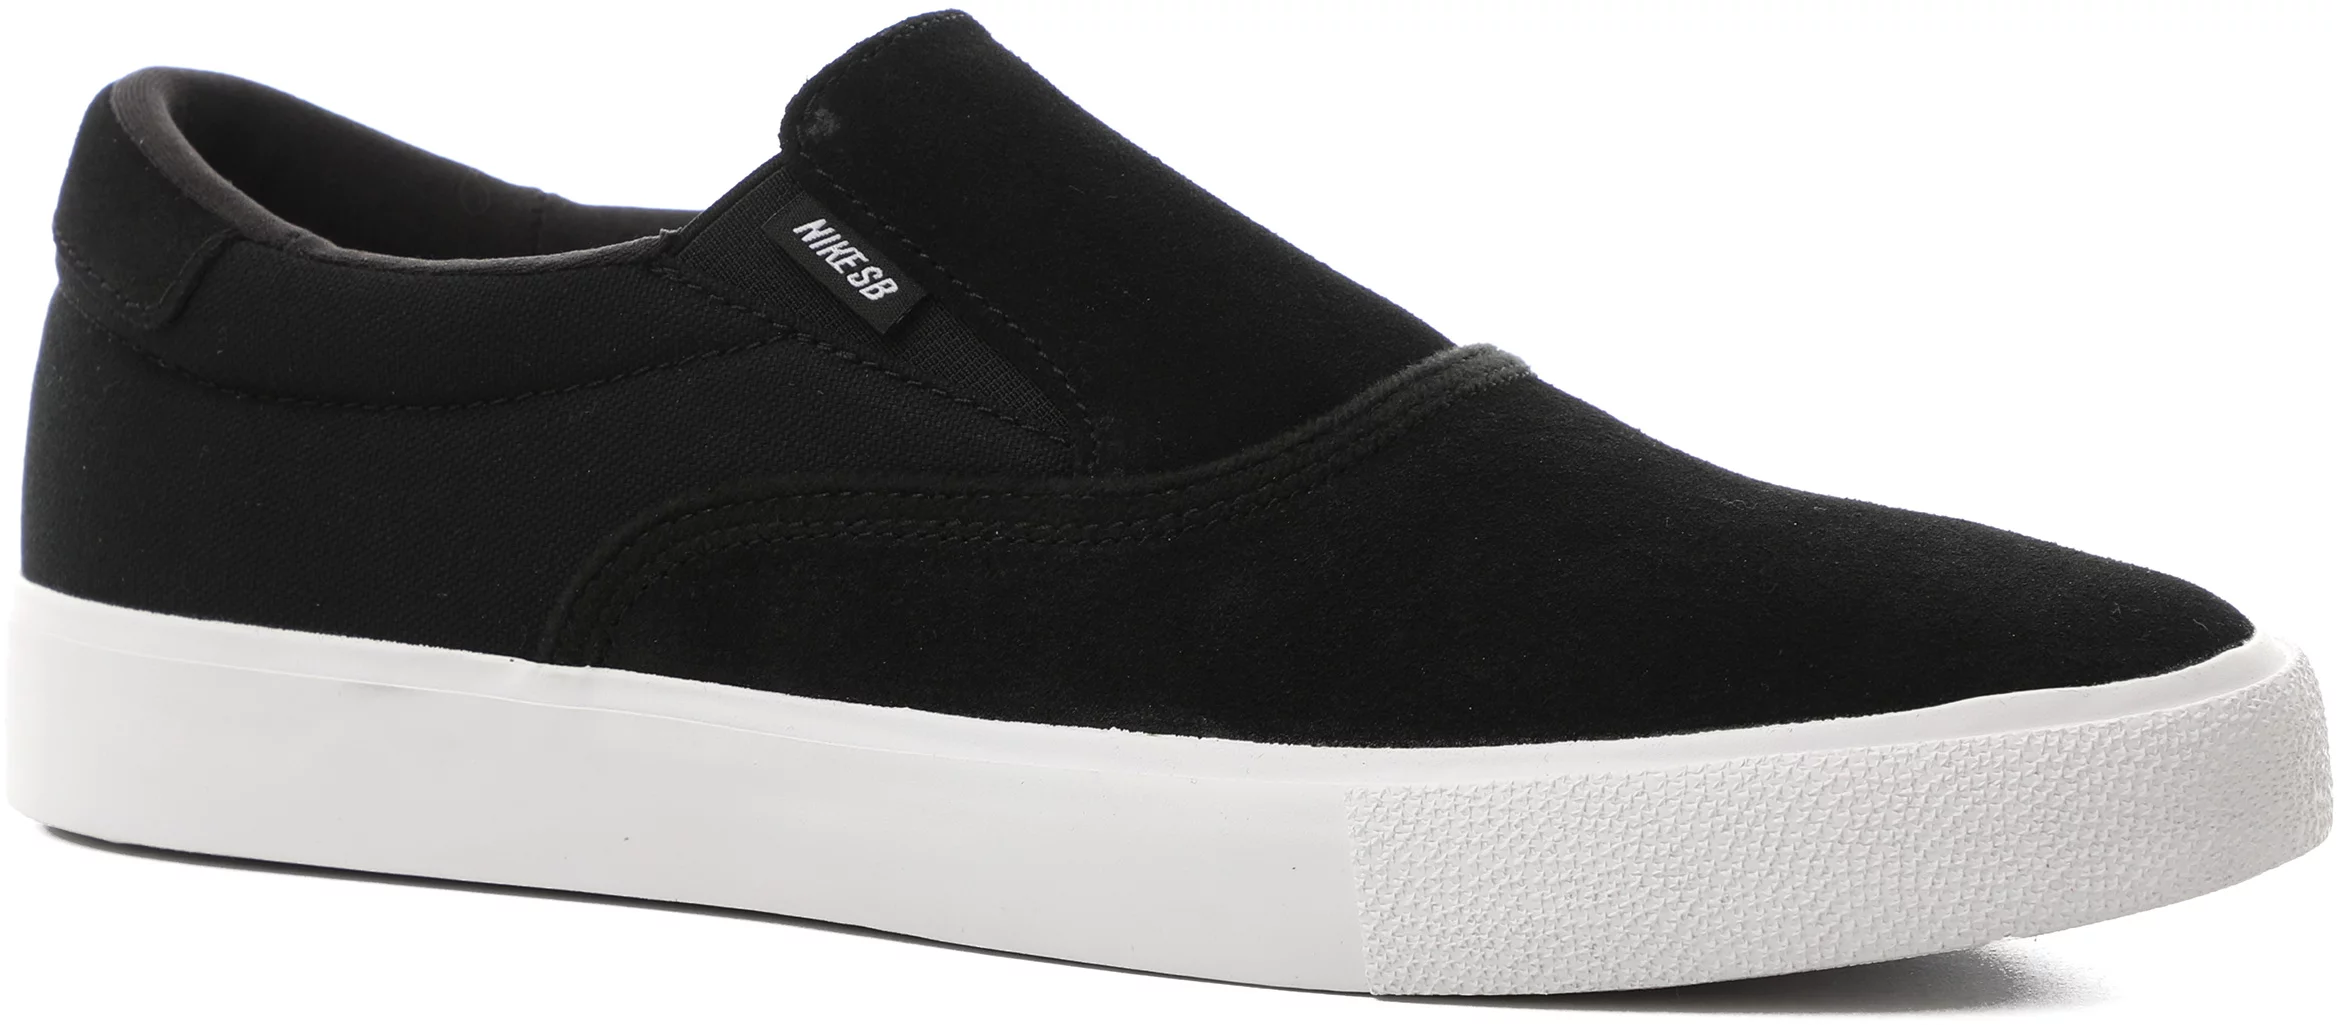 Weggelaten Zwijgend Doorlaatbaarheid Nike SB Zoom Verona Slip-On Shoes - black/white-black | Tactics